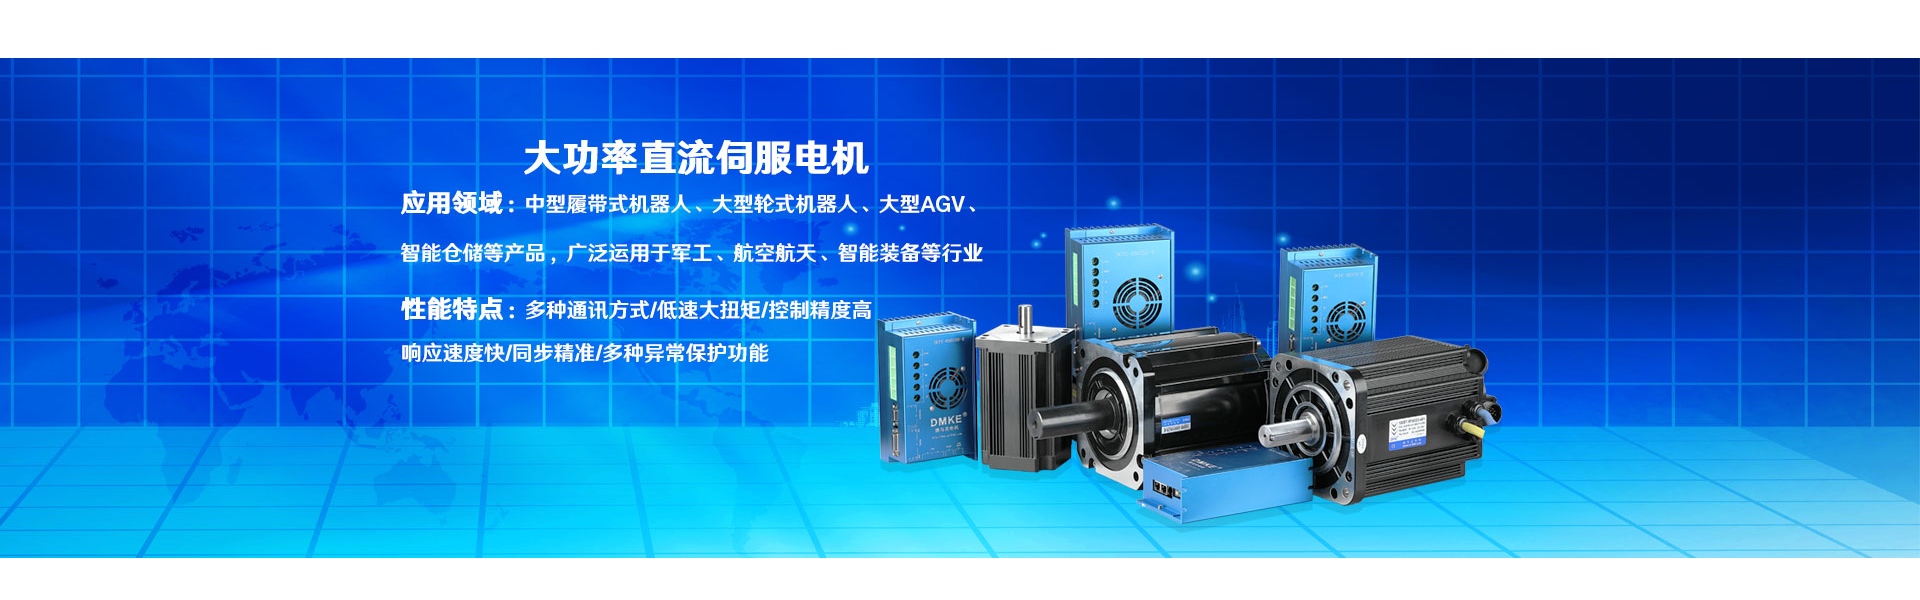 silnik, silnik prądu stałego, bezszczotkowy silnik prądu stałego,Dongguan Joy Machinery Manufacturing Co.,Ltd.